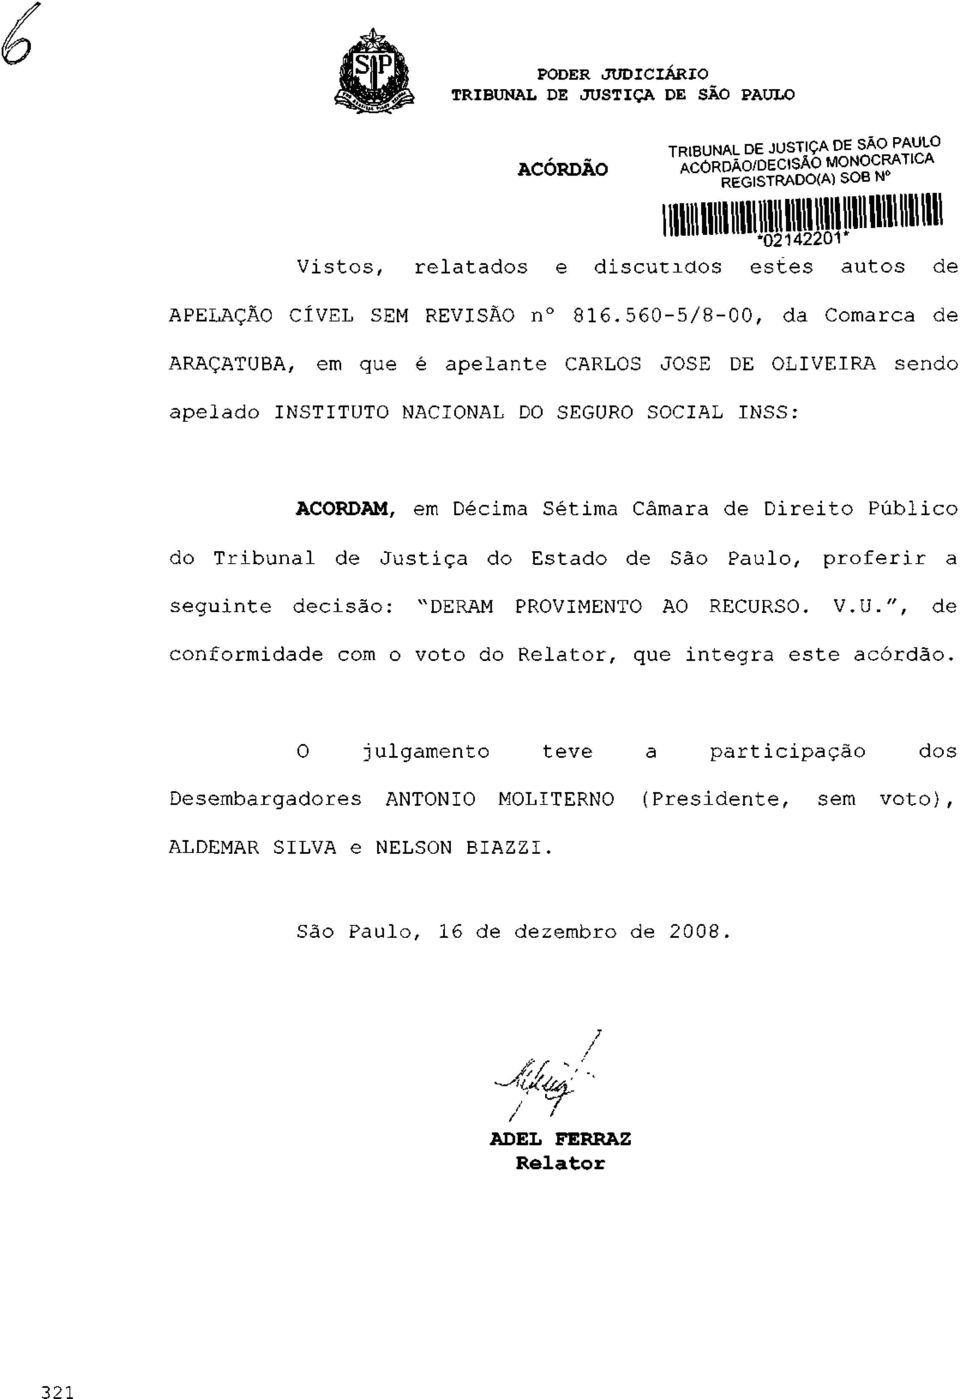 Público do Tribunal de Justiça do Estado de São Paulo, proferir a seguinte decisão: "DERAM PROVIMENTO AO RECURSO. V.U.", de conformidade com o voto do Relator, que integra este acórdão.